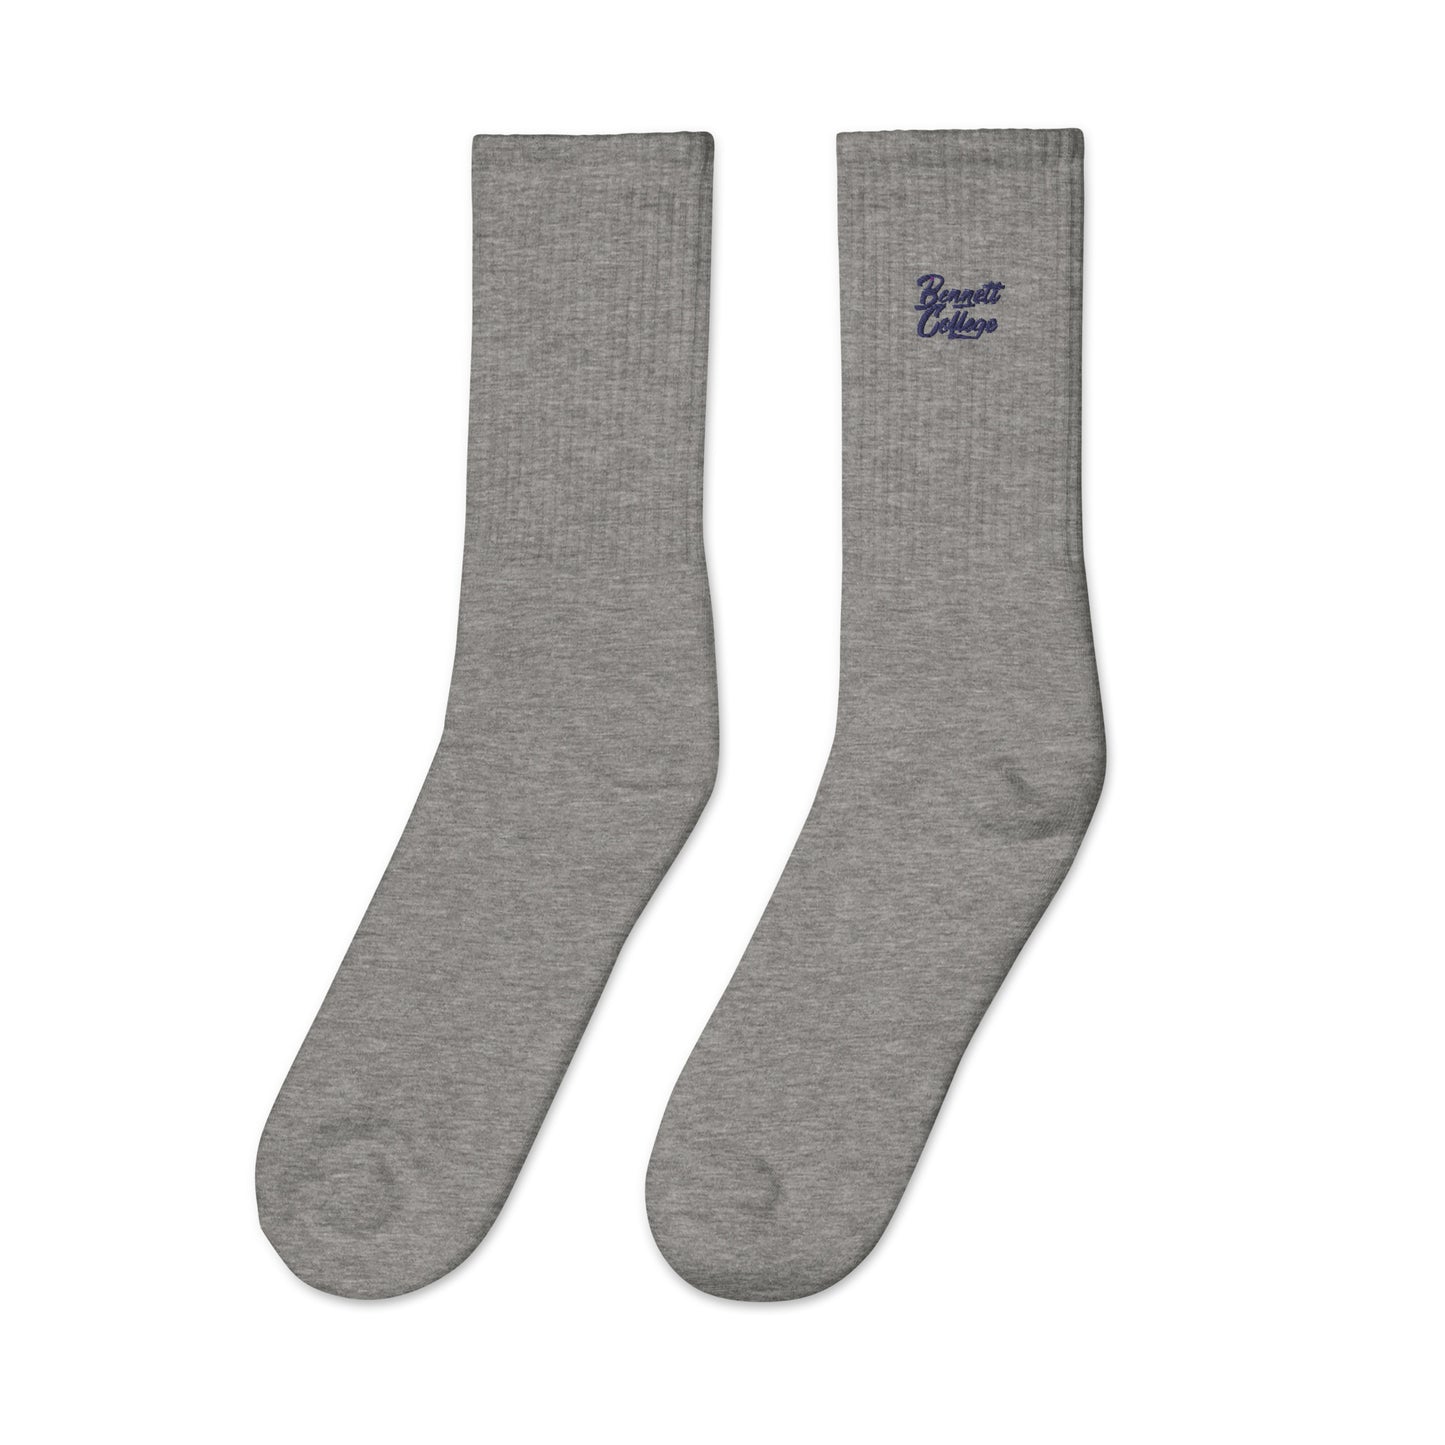 Bennett College Embroidered socks